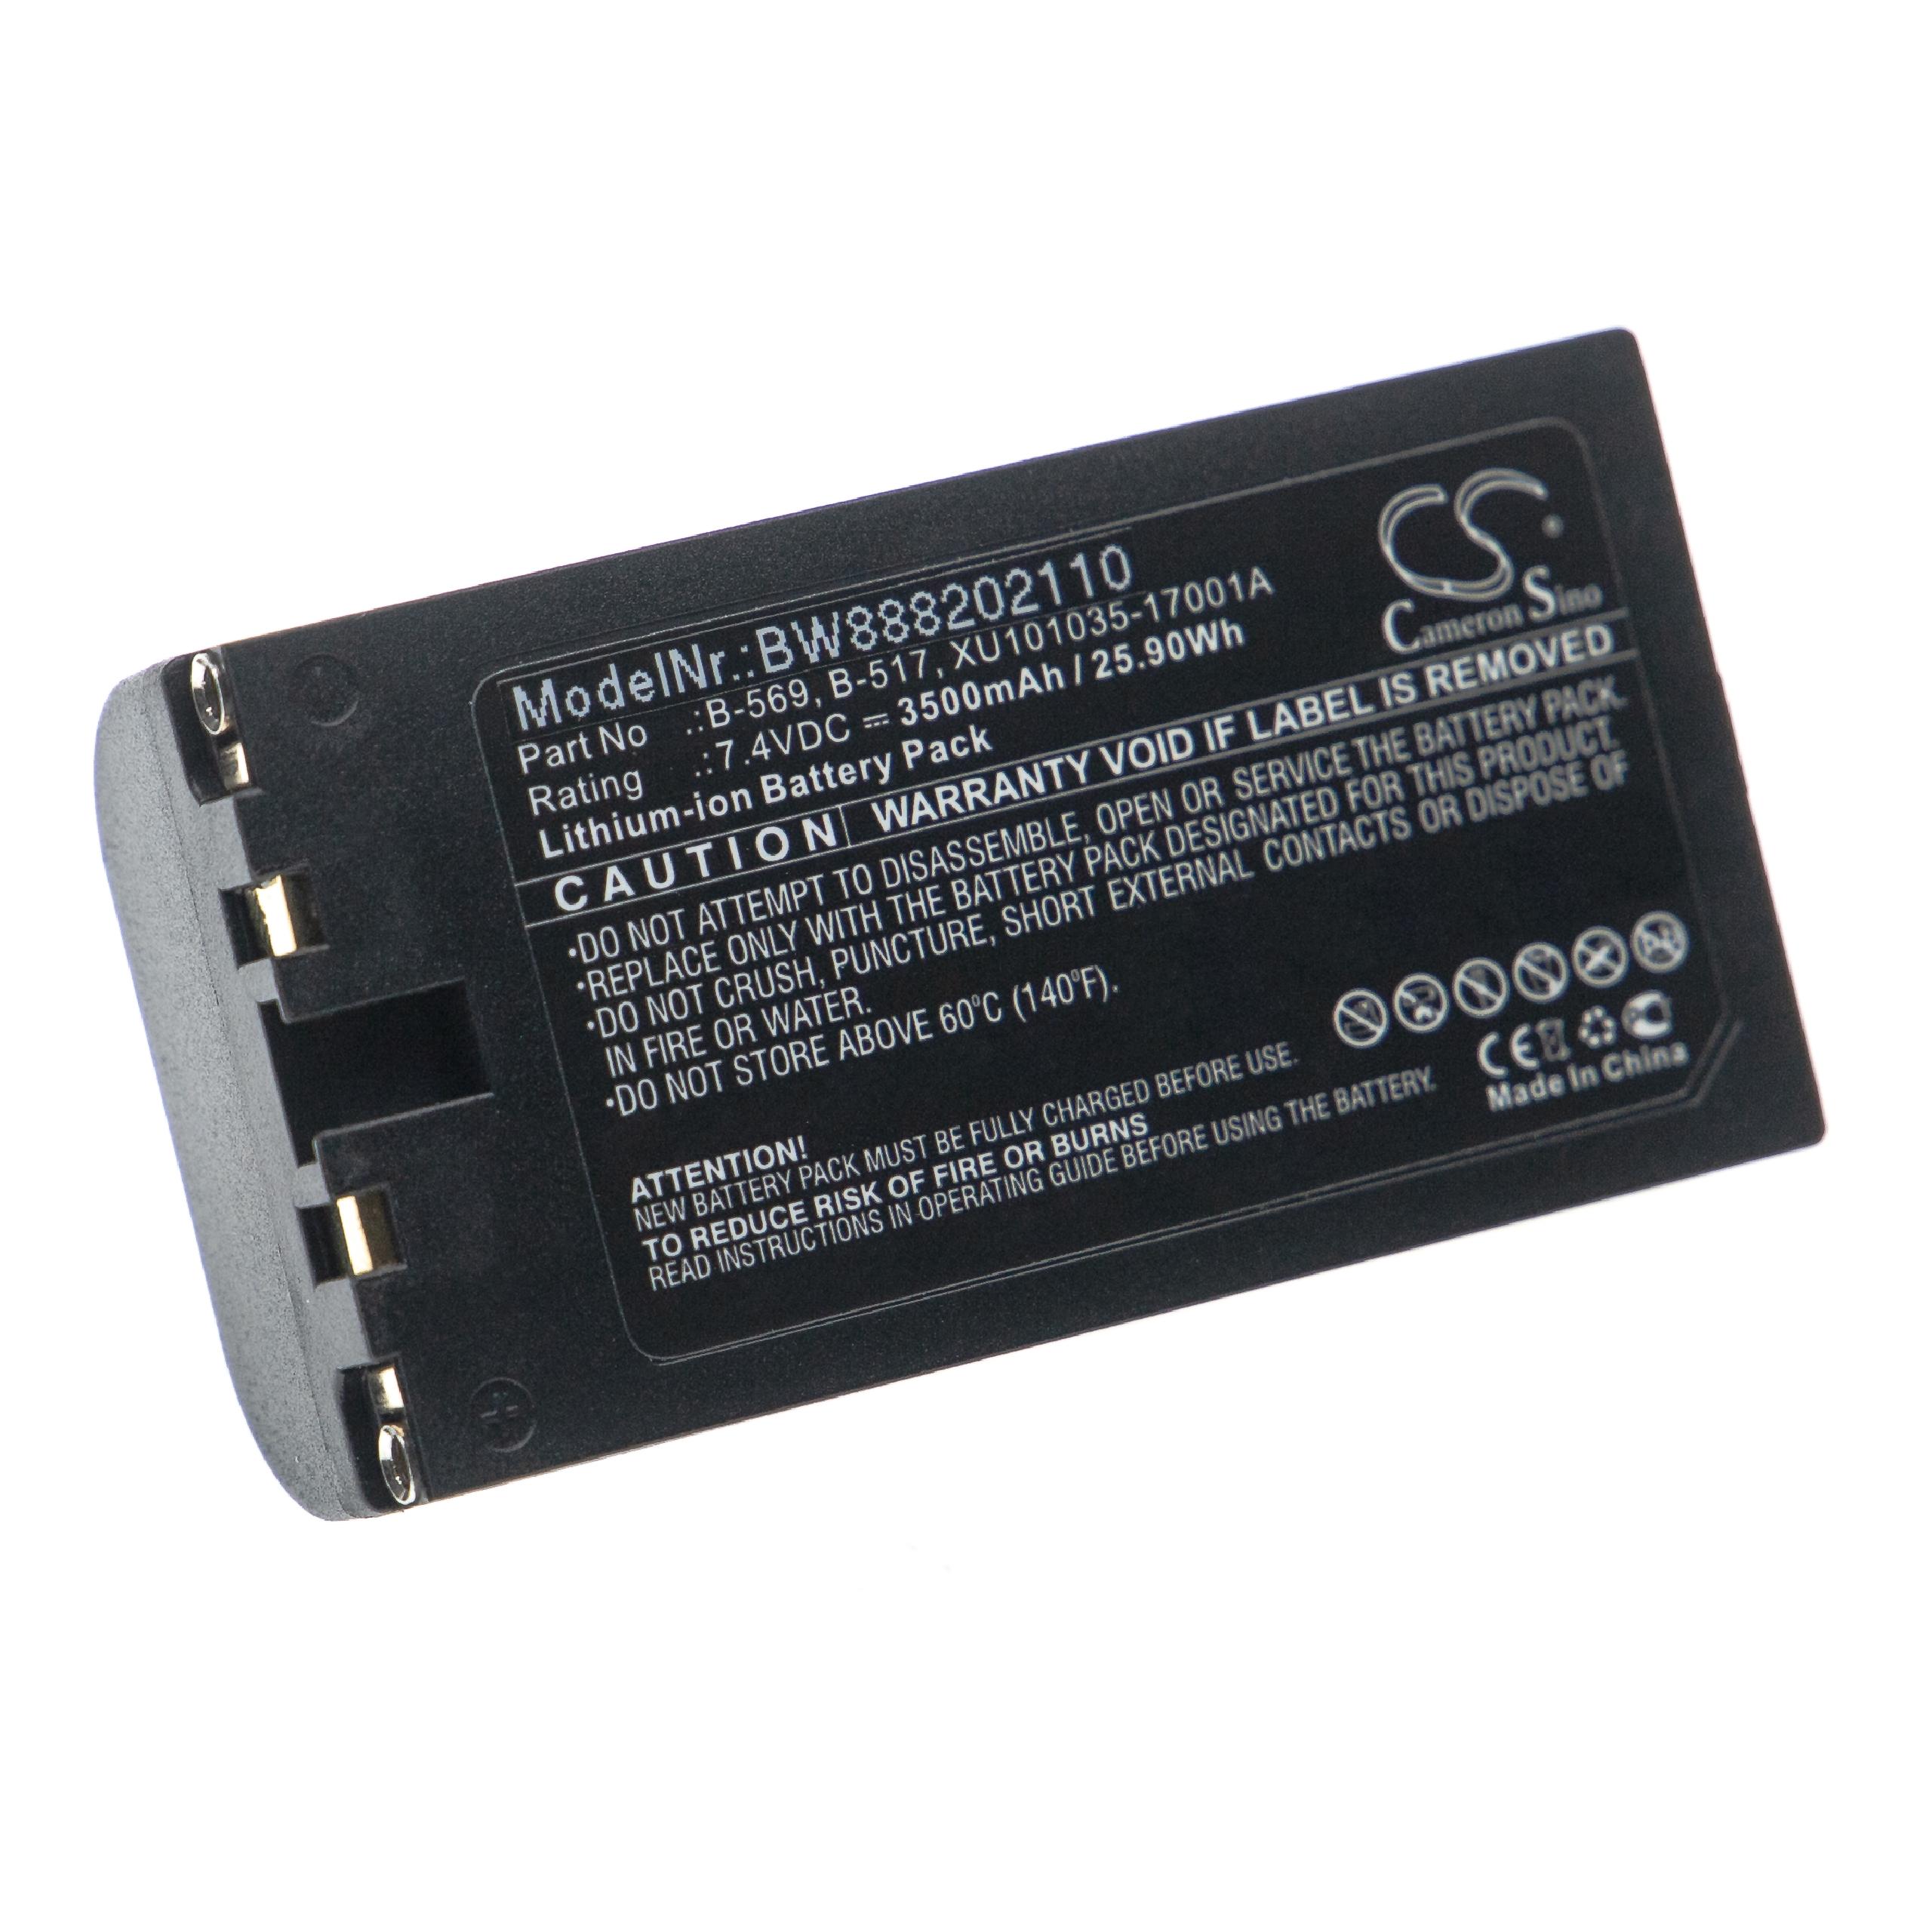 Akumulator do przyrządu pomiarowego zamiennik Graphtec XU101035-17001A, B-569, B-517 - 3500 mAh 7,4 V Li-Ion